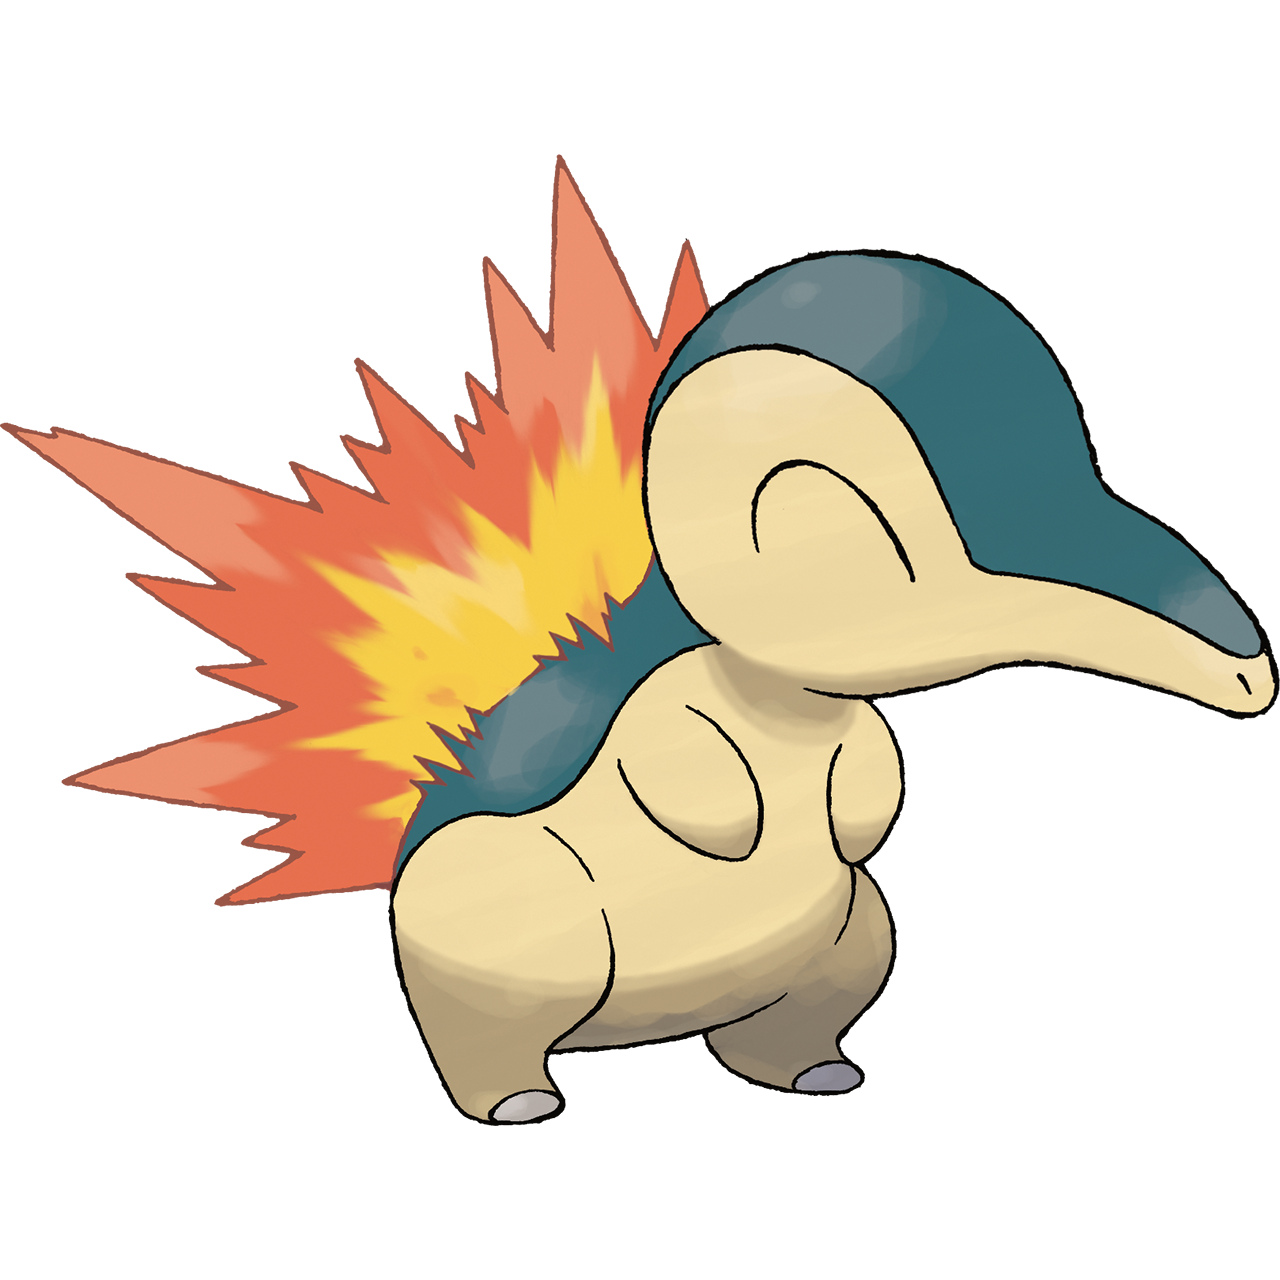 Ajubá pokemon tipo roedor, terra, elétrico, planta, lutador e Psíquico  Lenda indígena diz que esse Pokémon é uns dos três poke…